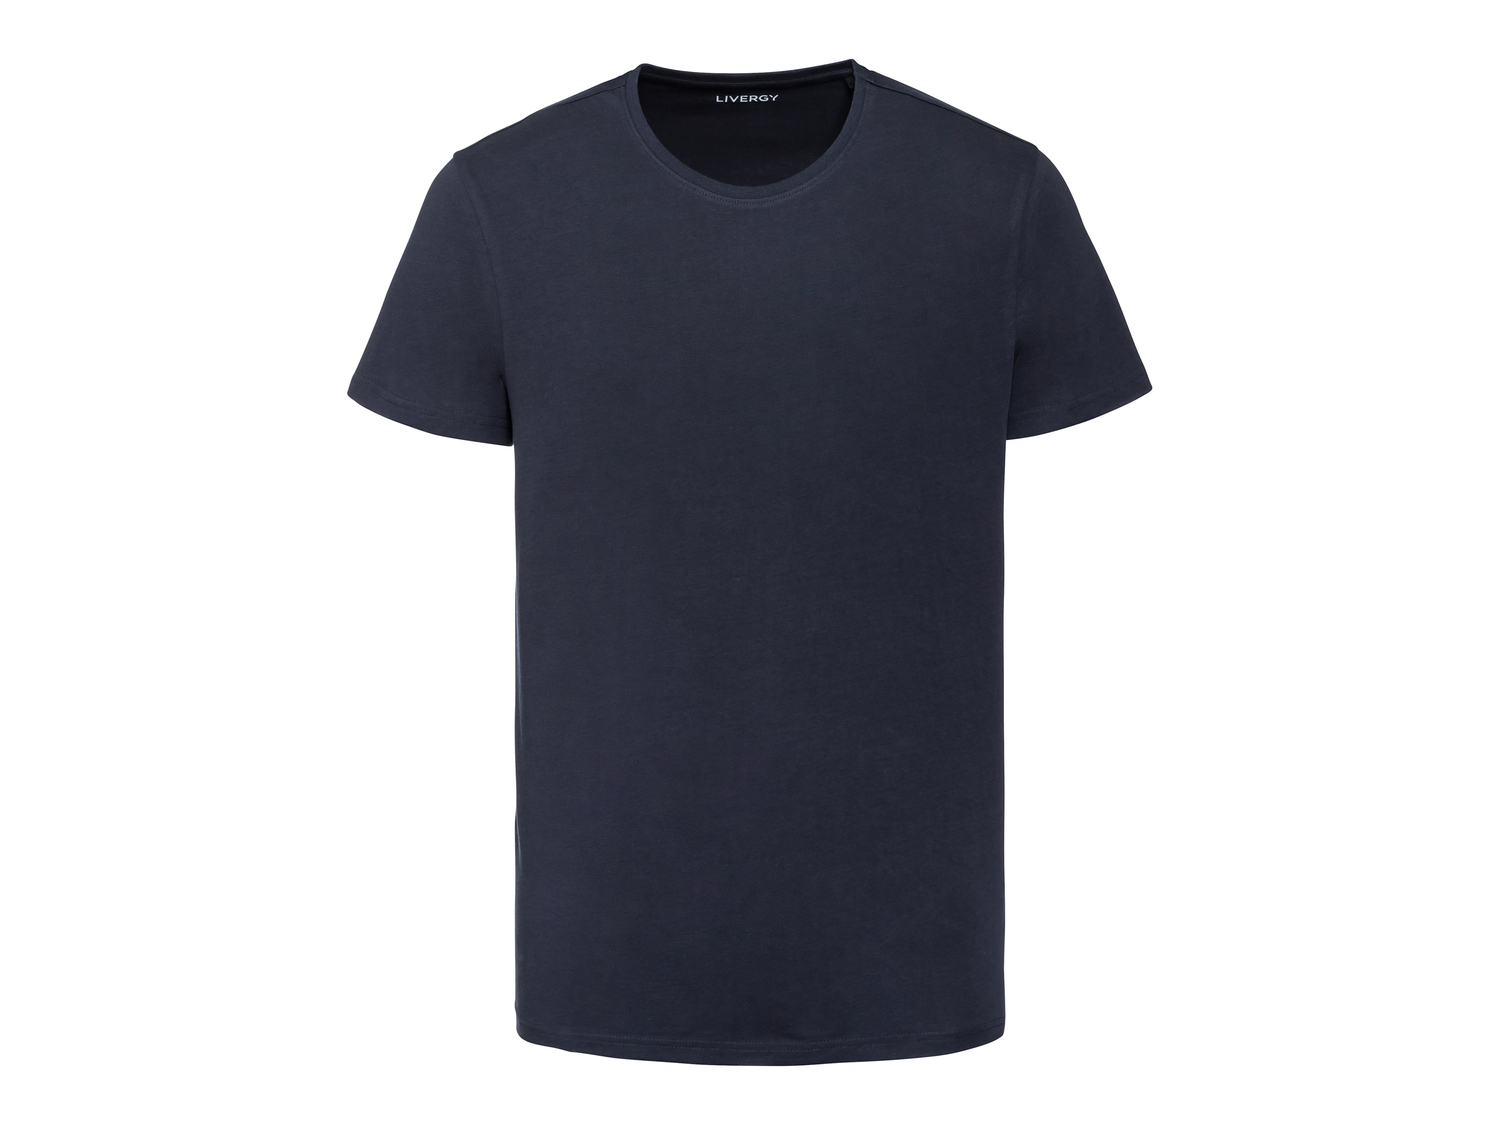 T-shirt da uomo Livergy, prezzo 2.99 € 
Misure: S-XL
Taglie disponibili

Caratteristiche

- ...